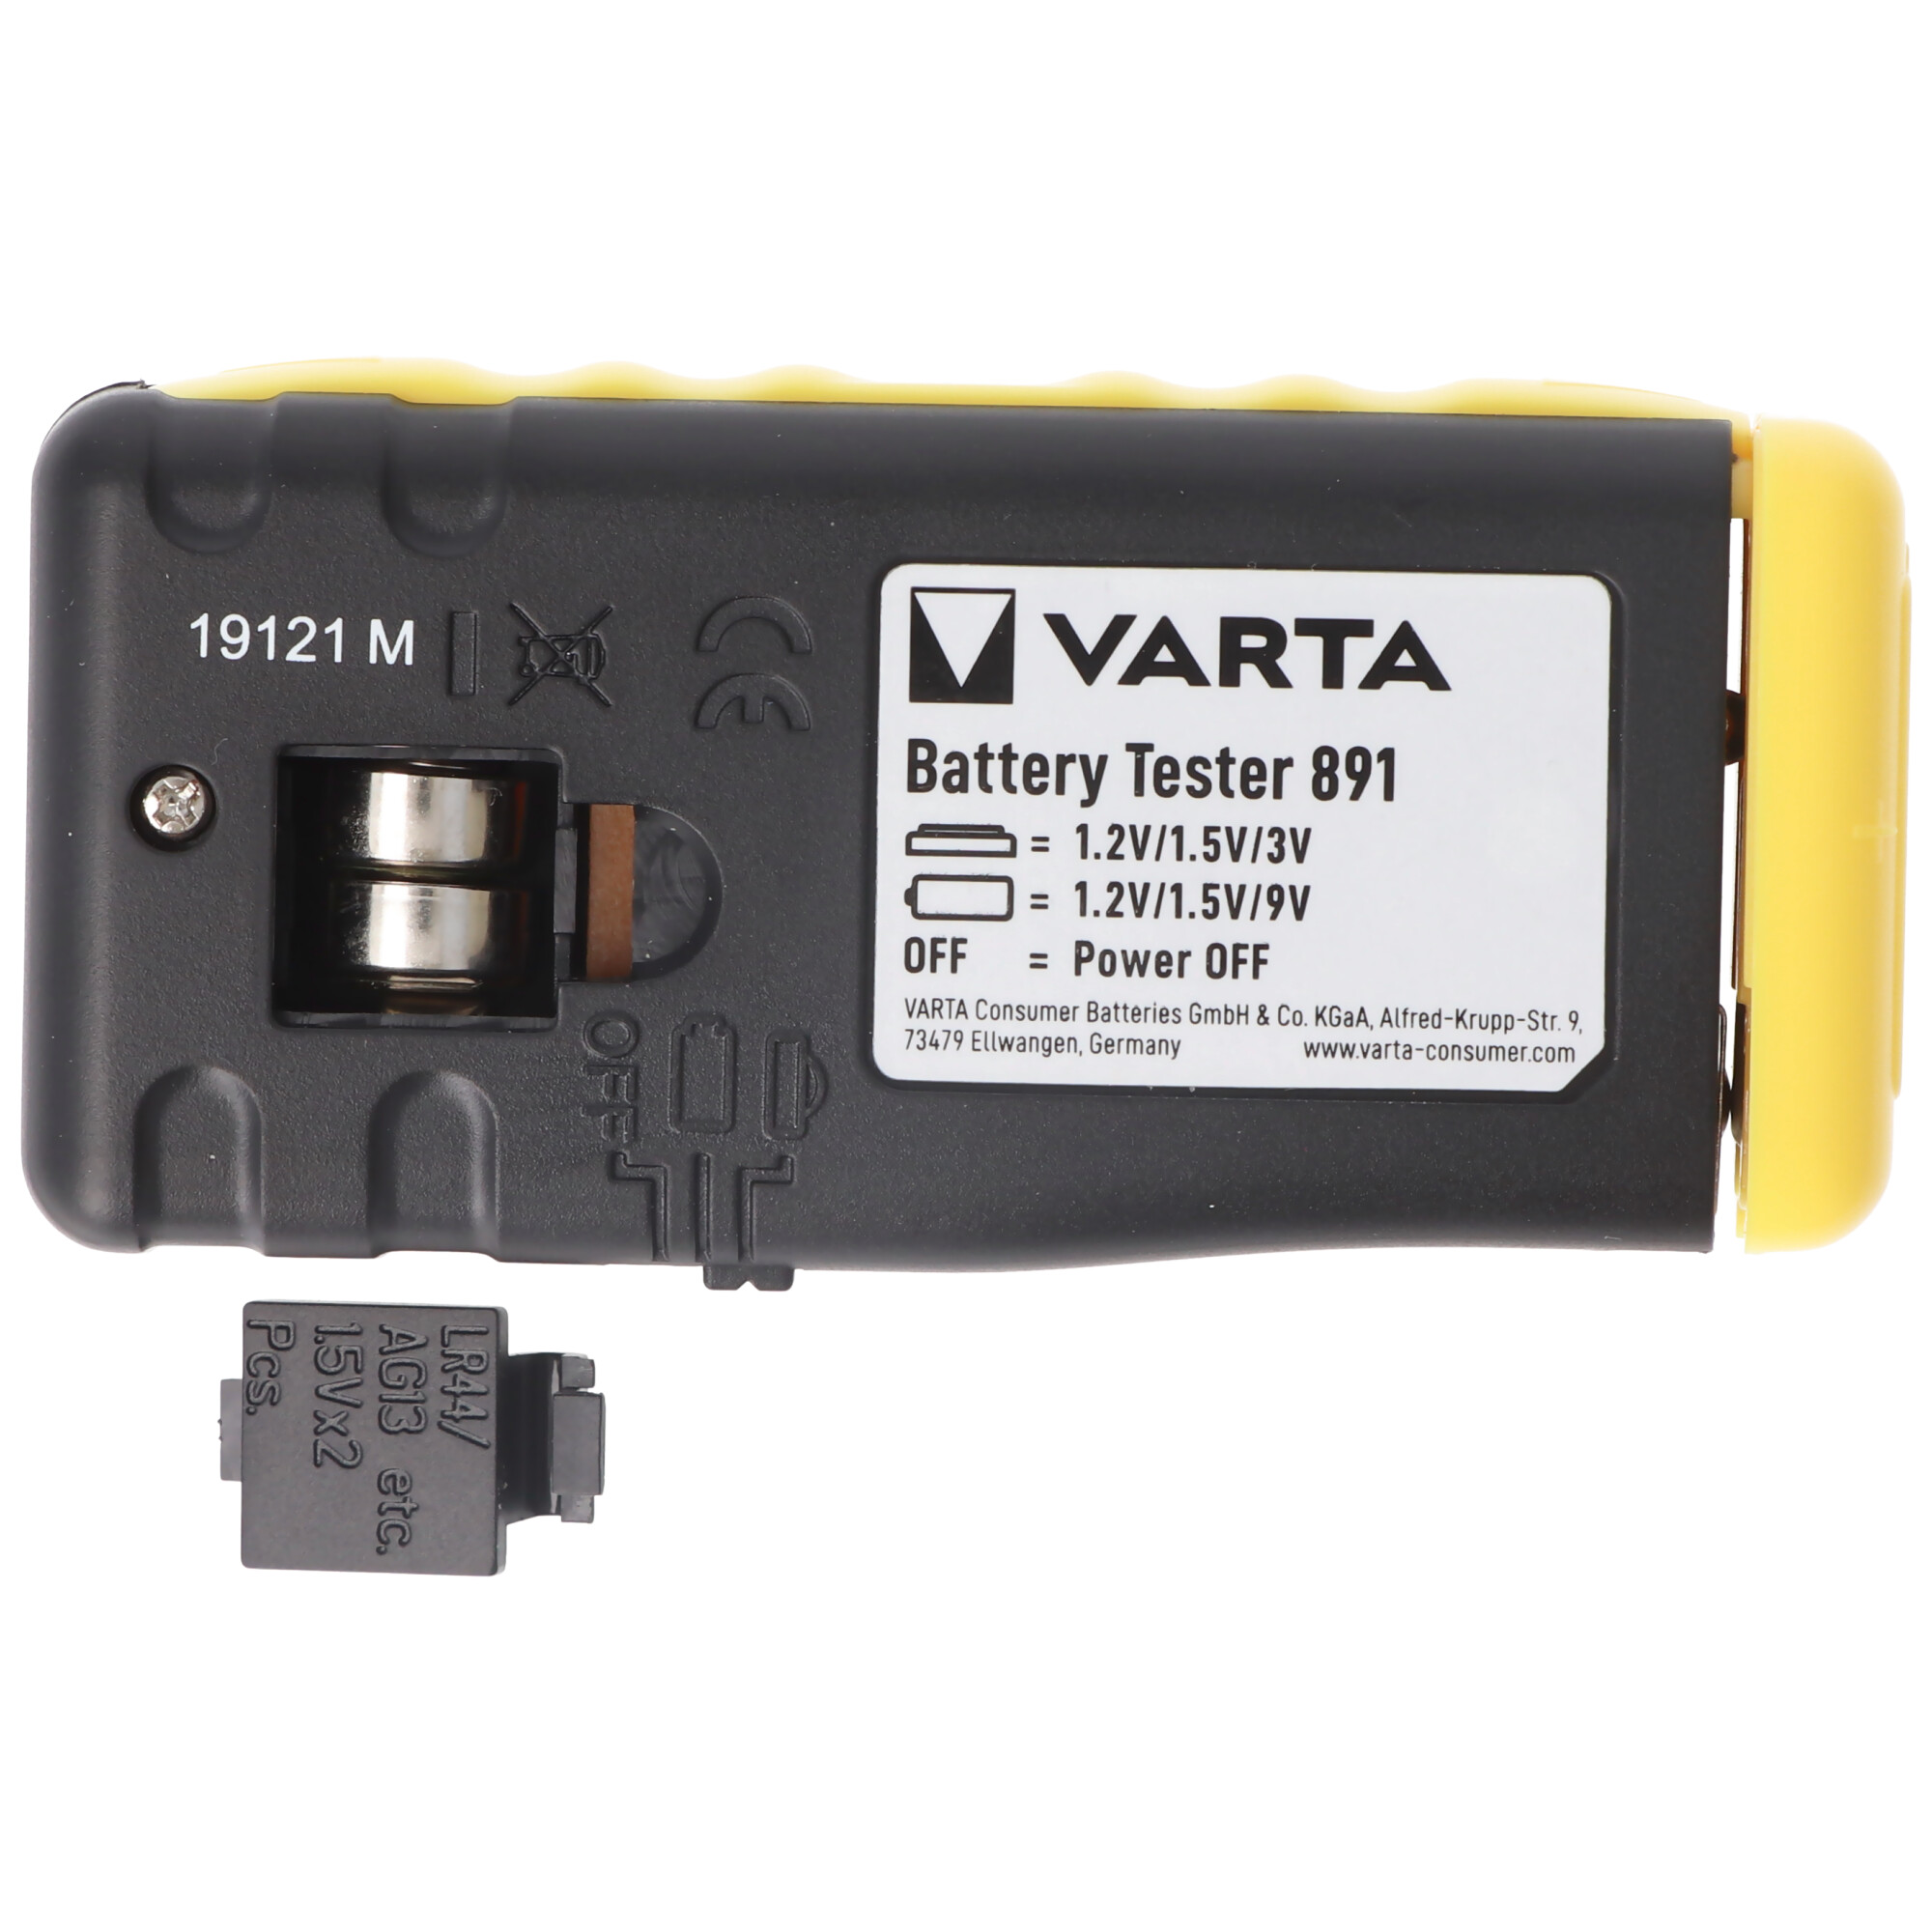 Varta Batterietester LCD Digital, praktischer und benutzerfreundlicher Batterietester